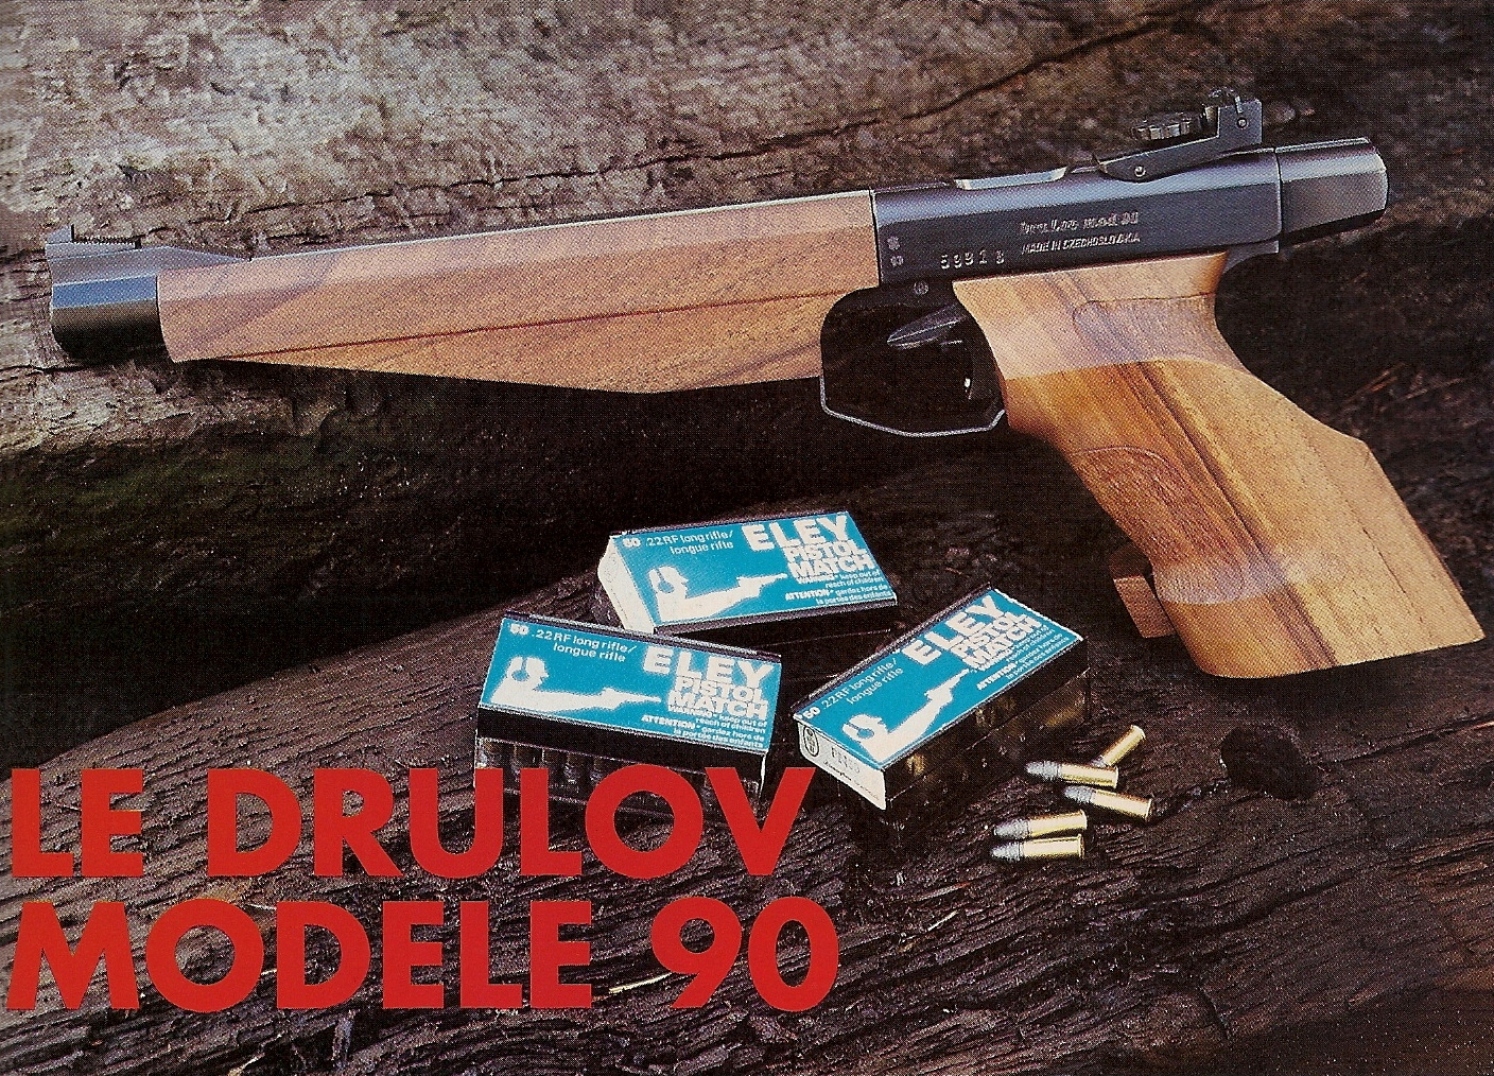 Le Drulov 90 ne constitue en fait qu'un « relooking », mais force est de constater que le résultat est une réussite puisqu’il présente une apparence nettement plus luxueuse que celle, dépouillée et utilitaire, du classique Drulov modèle 75.